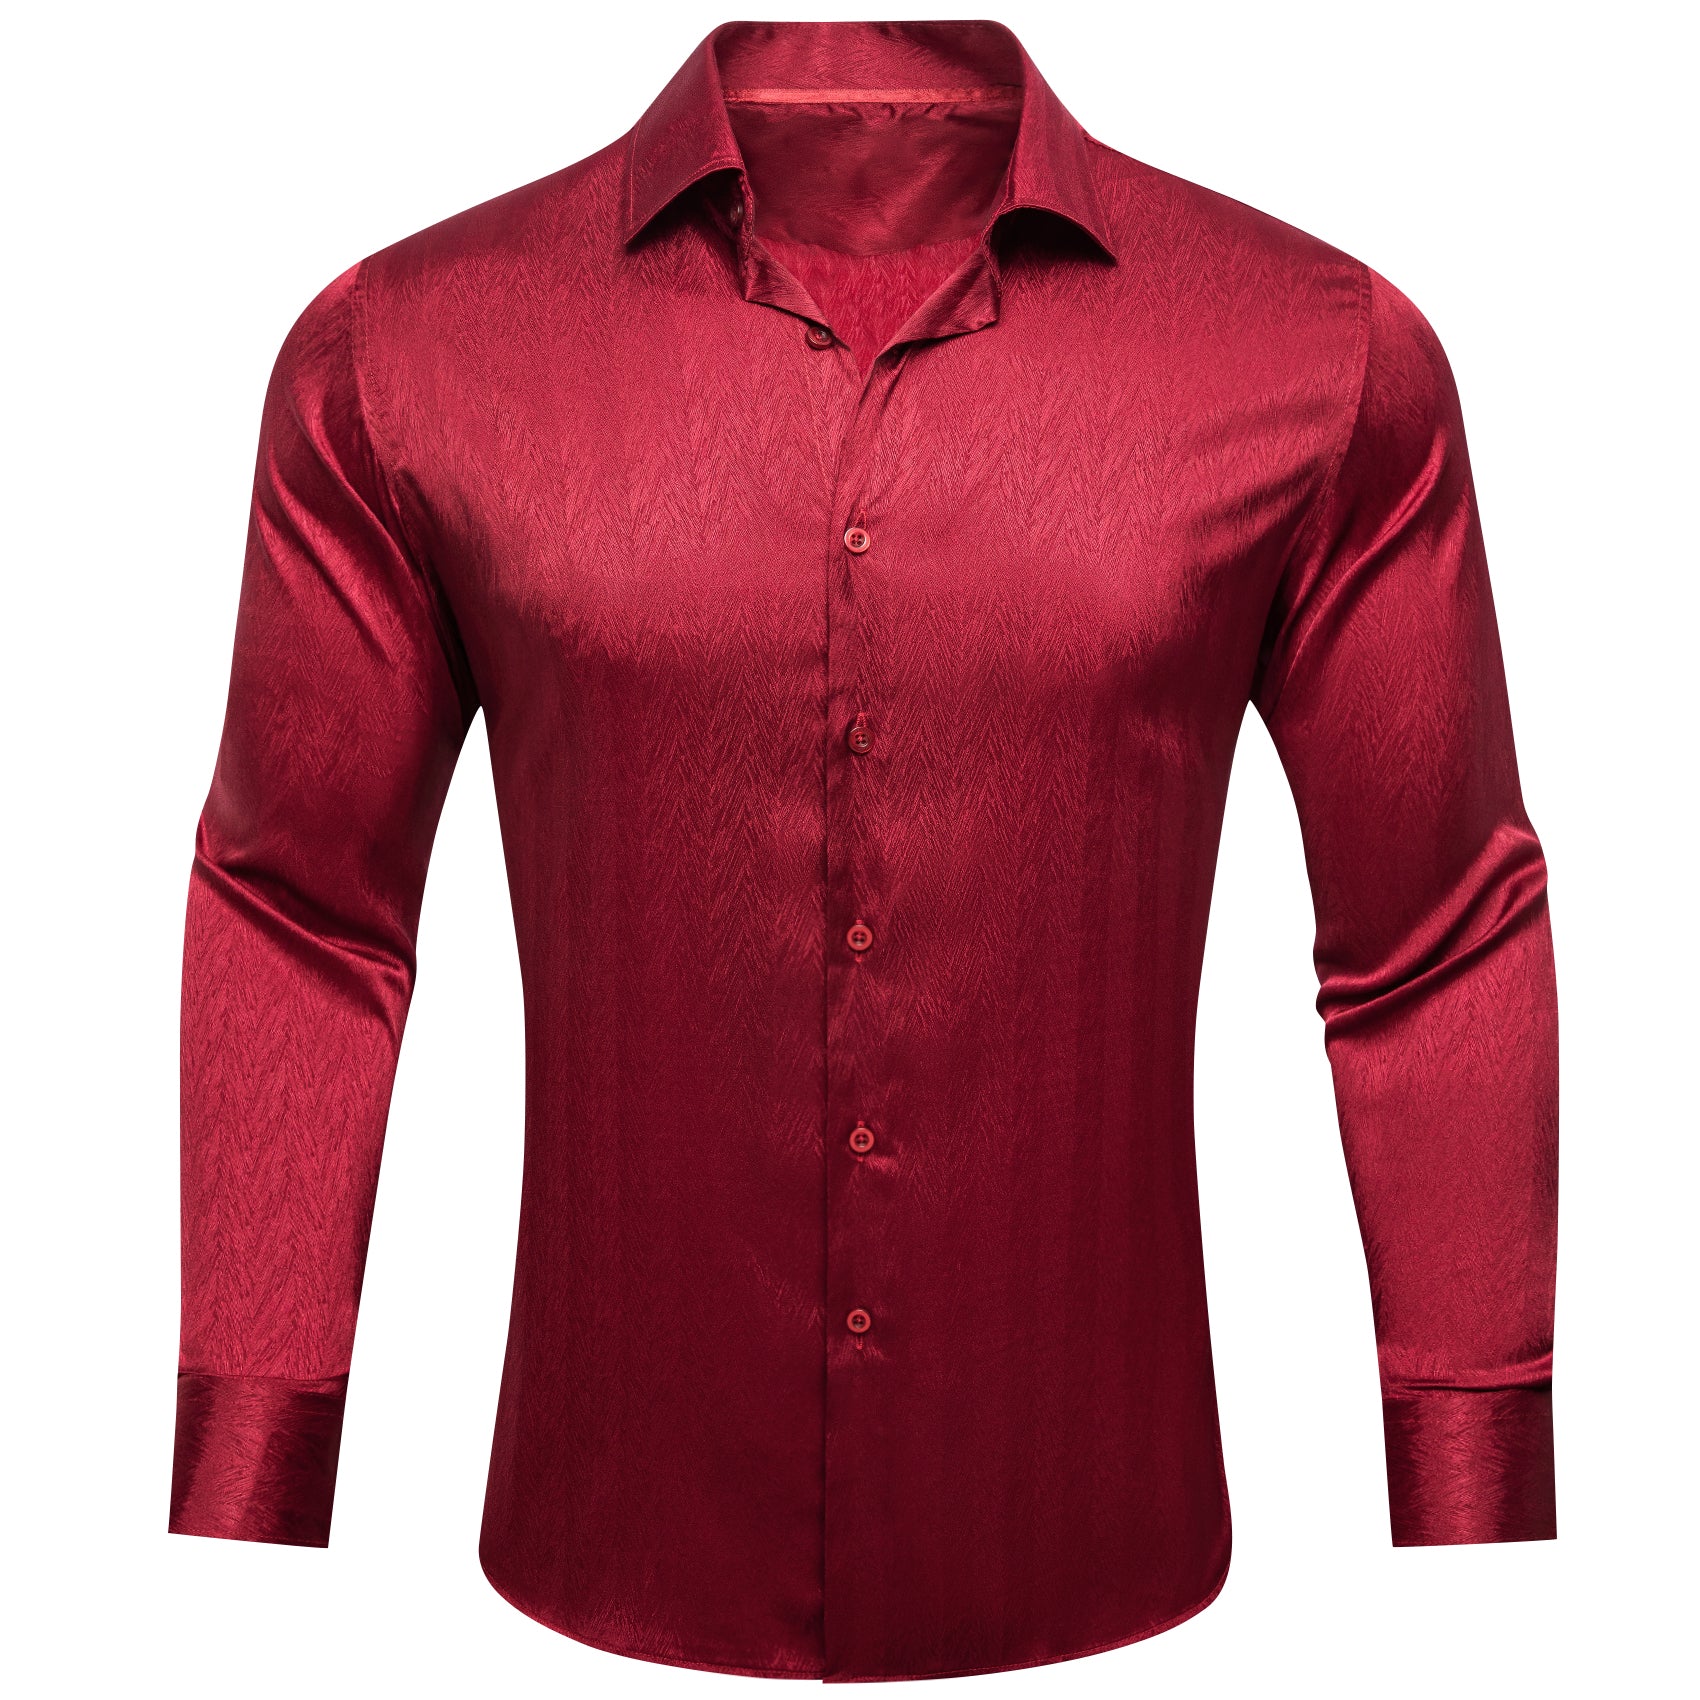 Barry.wang Dark Red Solid Silk Men's Shirt